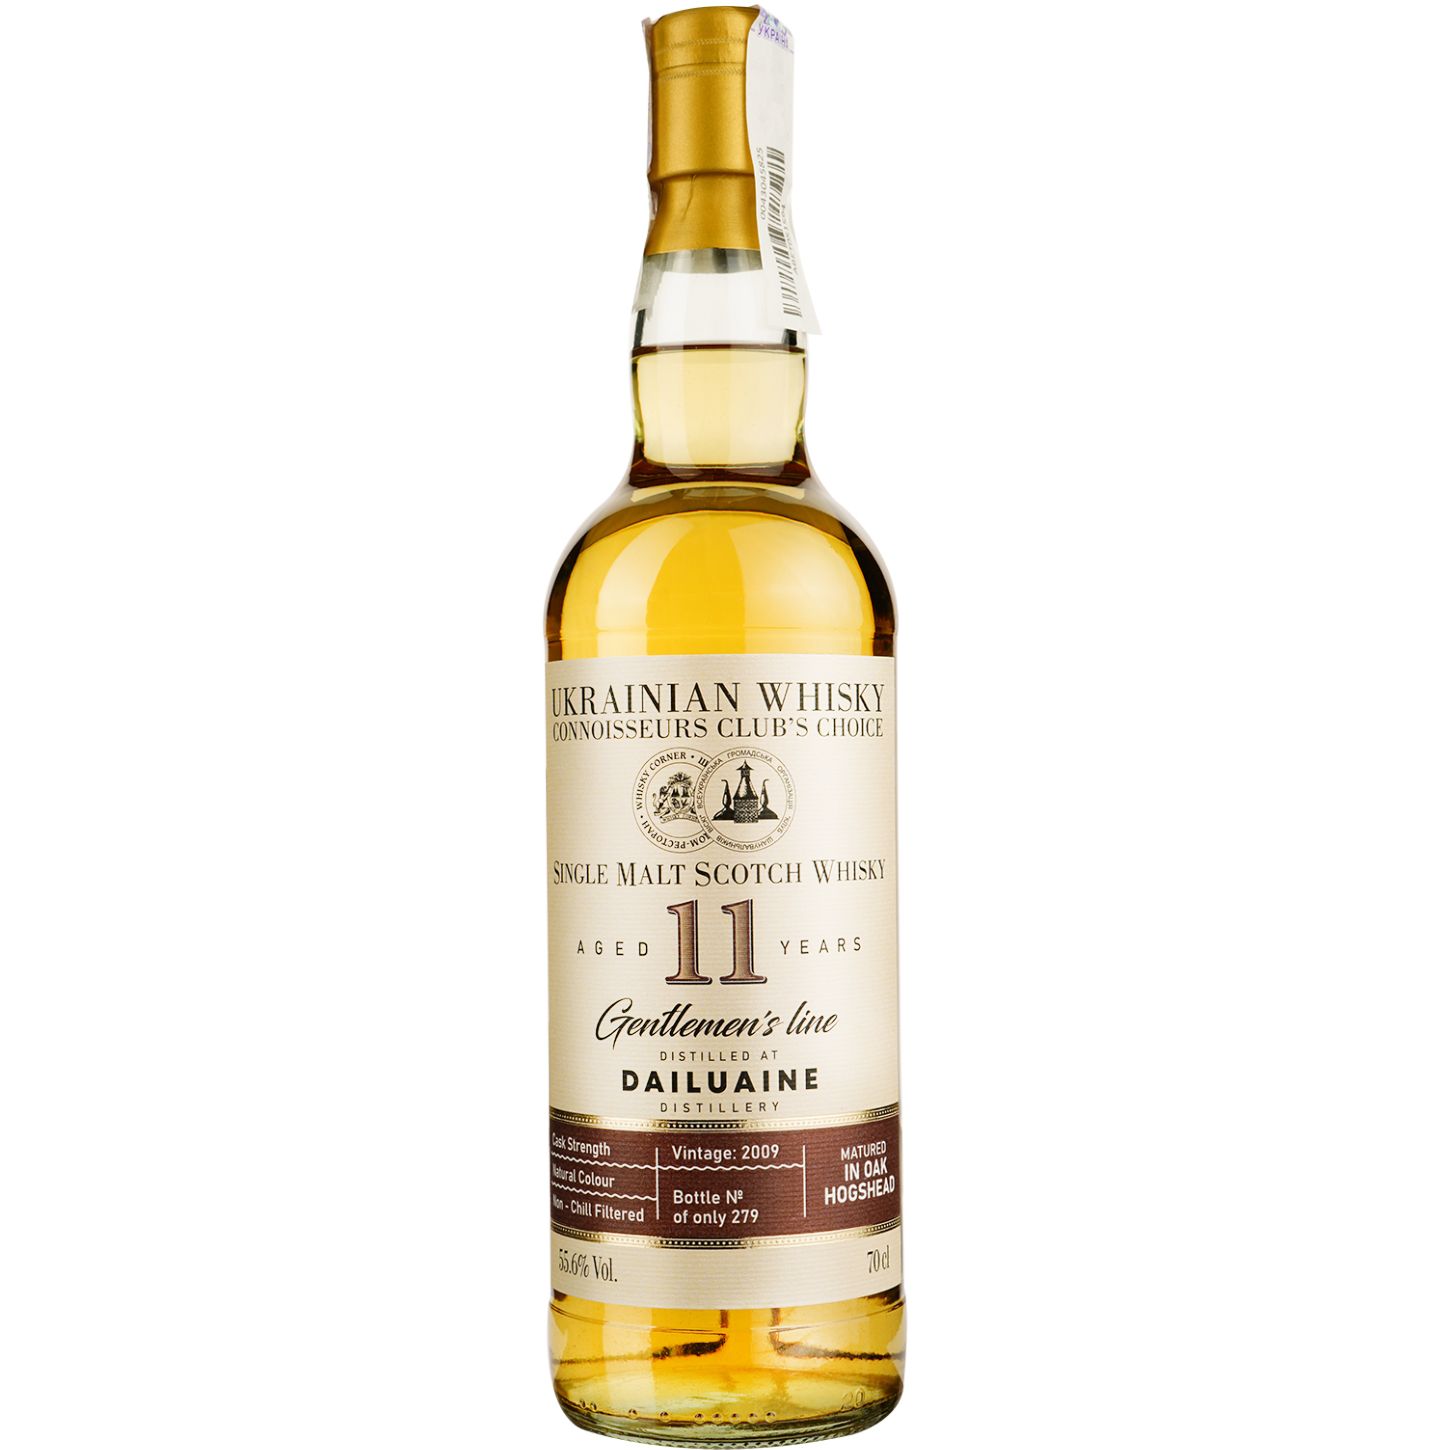 Віскі Dailuaine 11 Years Old Single Malt Scotch Whisky, у подарунковій упаковці, 55,6%, 0,7 л - фото 2